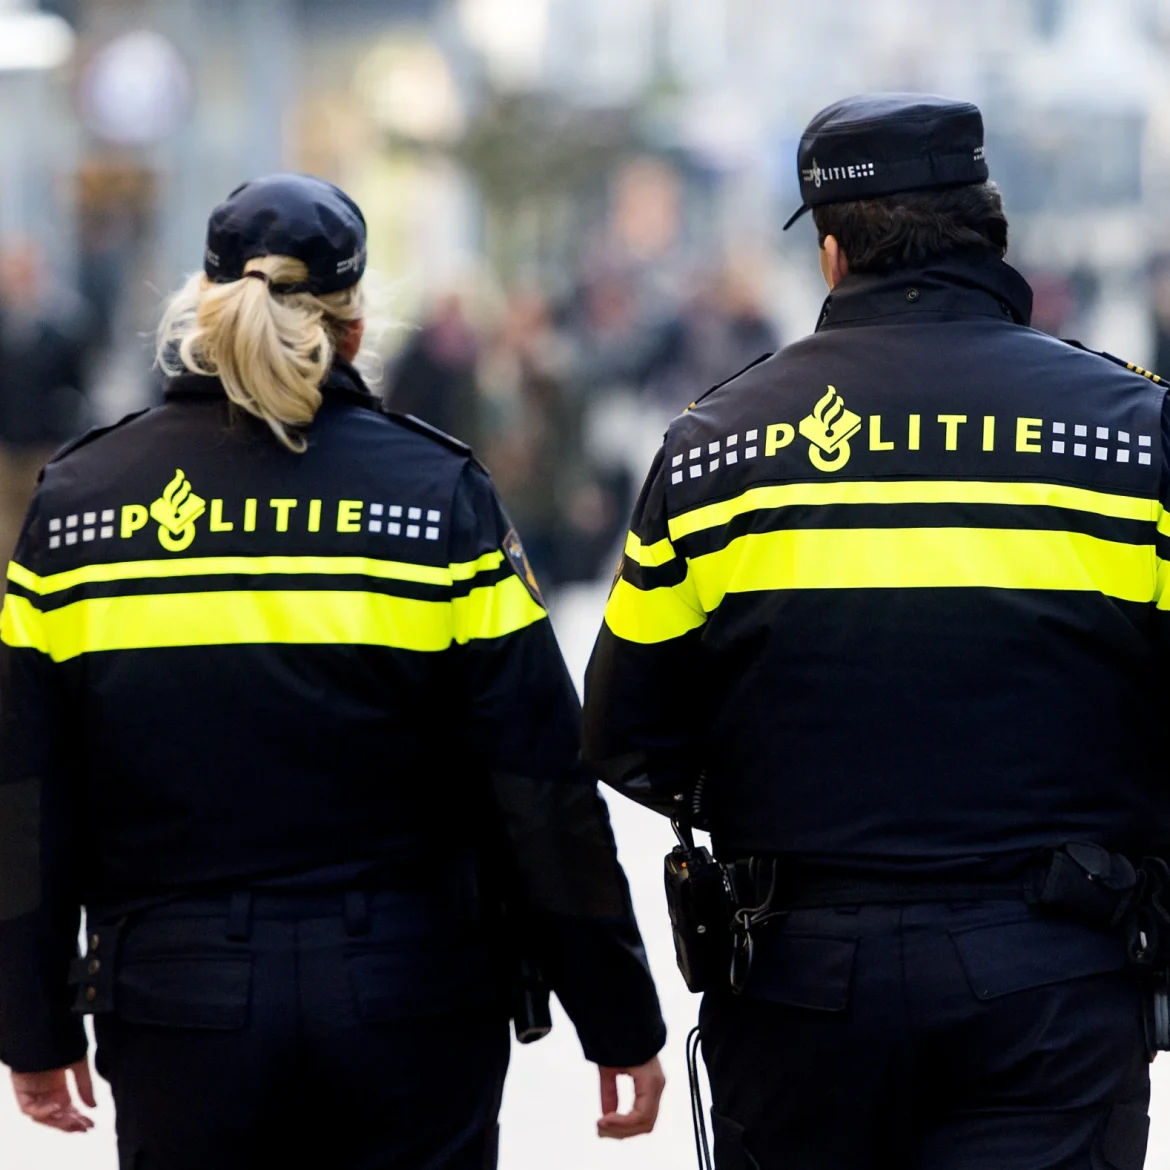 politieagenten op straat